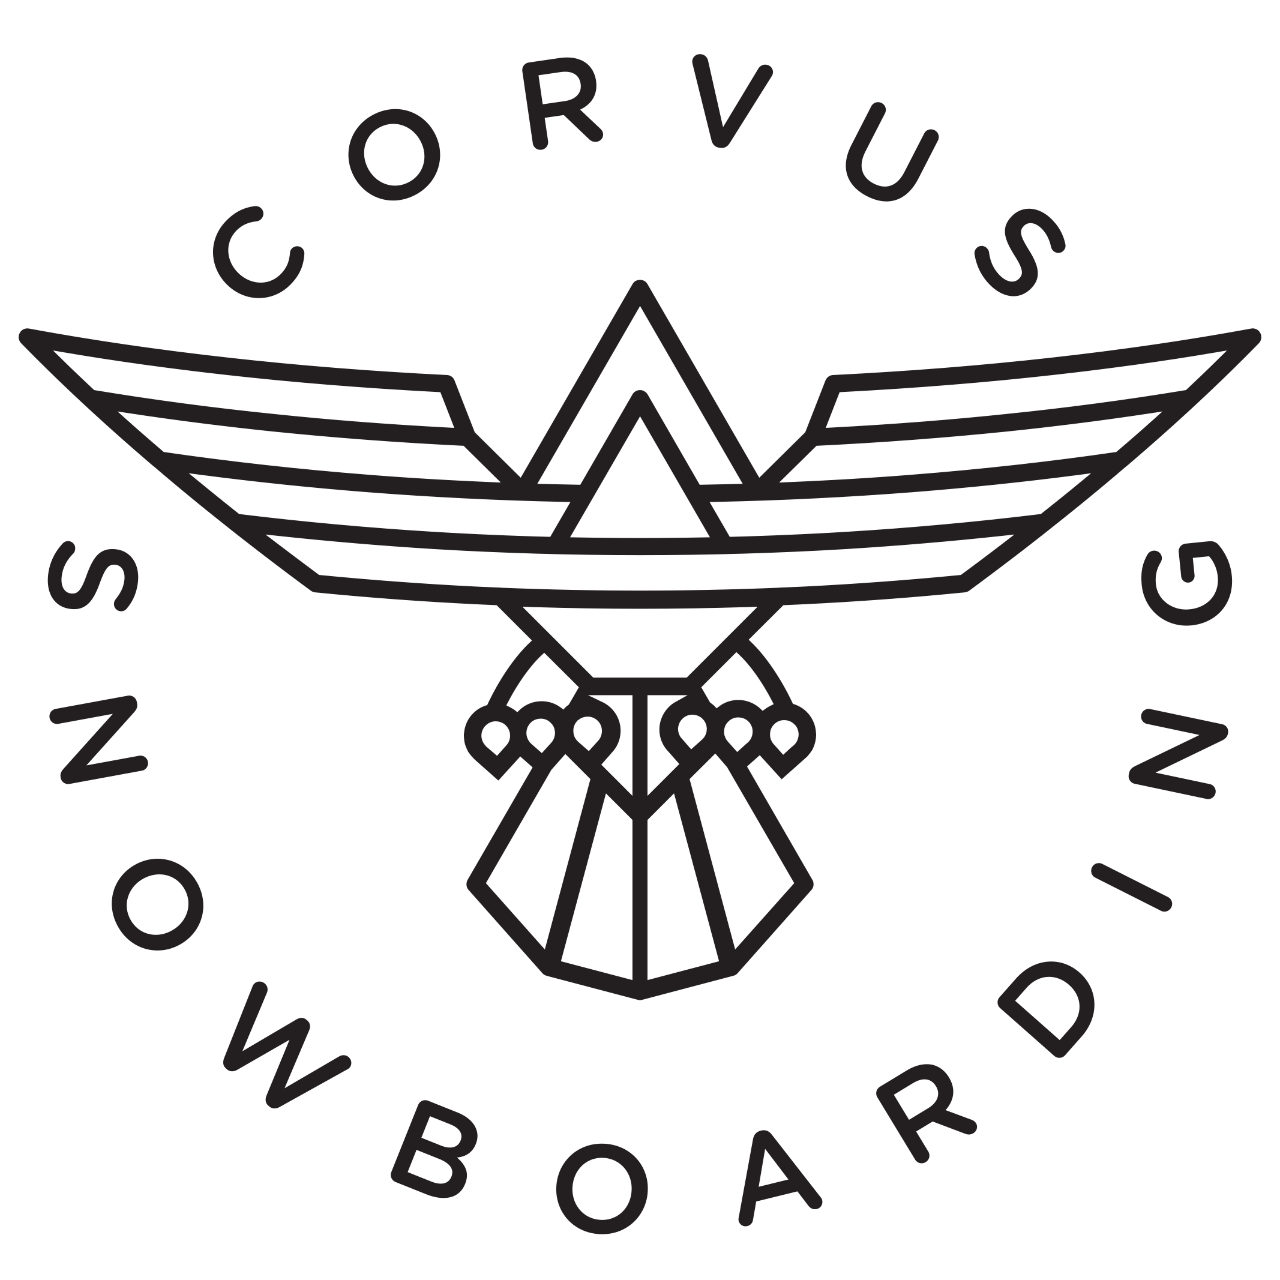 Corvus Snowboarding  -  Social Skills